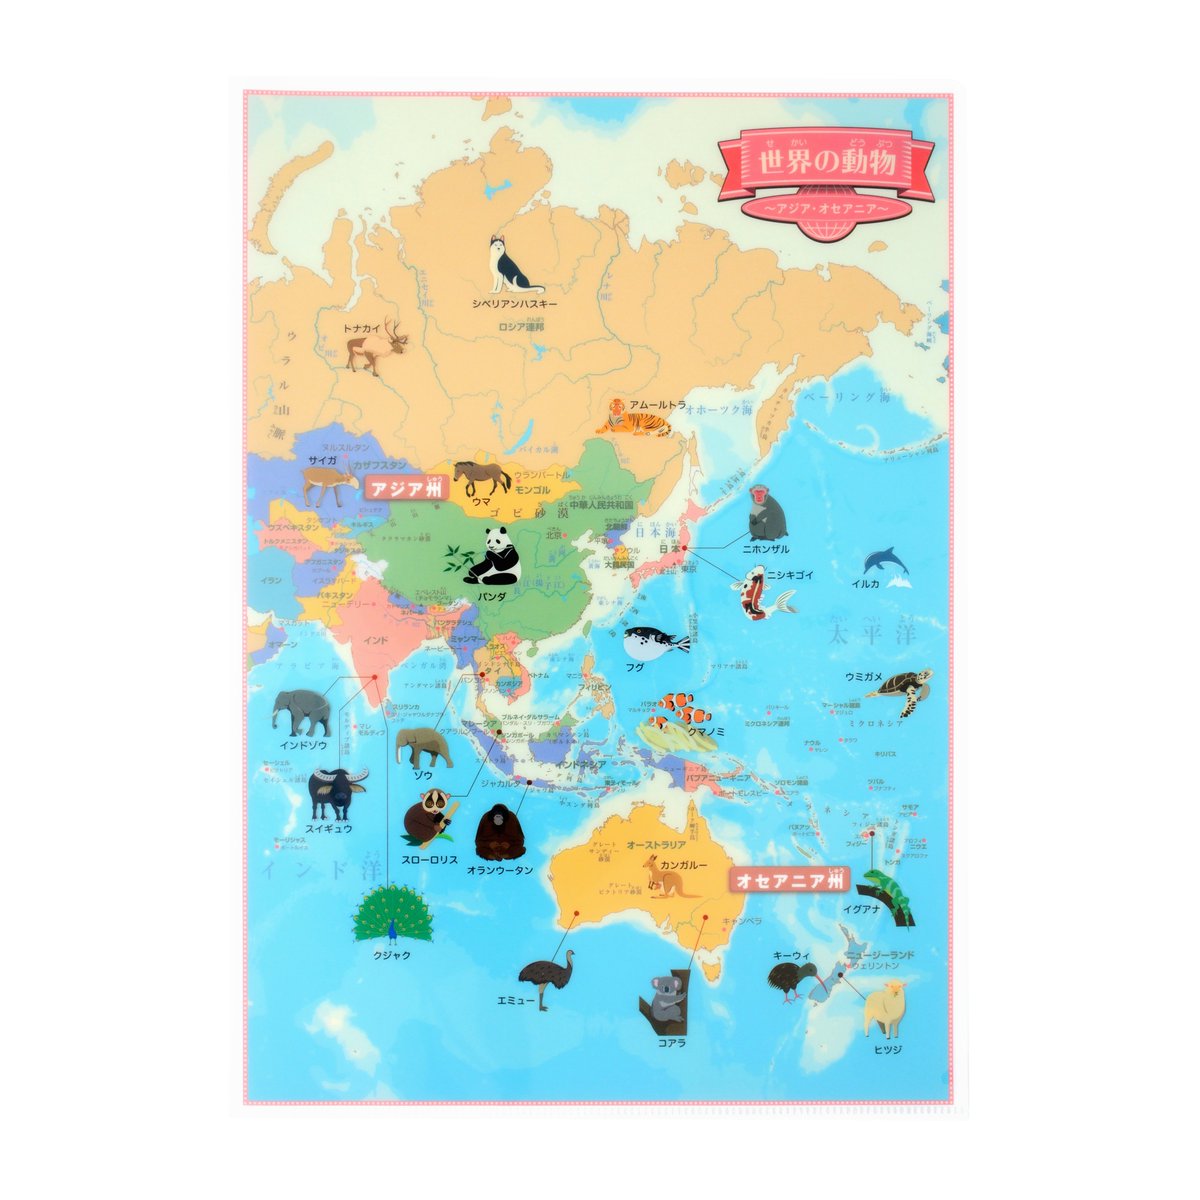 東京カートグラフィック Twitterren 世界の動物のかわいいイラストが載っている本格的な世界地図クリアファイルを販売しています ヨーロッパ アフリカ アジア オセアニア 南北アメリカ ヨーロッパ 拡大 の4枚セットです T Co Un3ou6auex 他にも名所